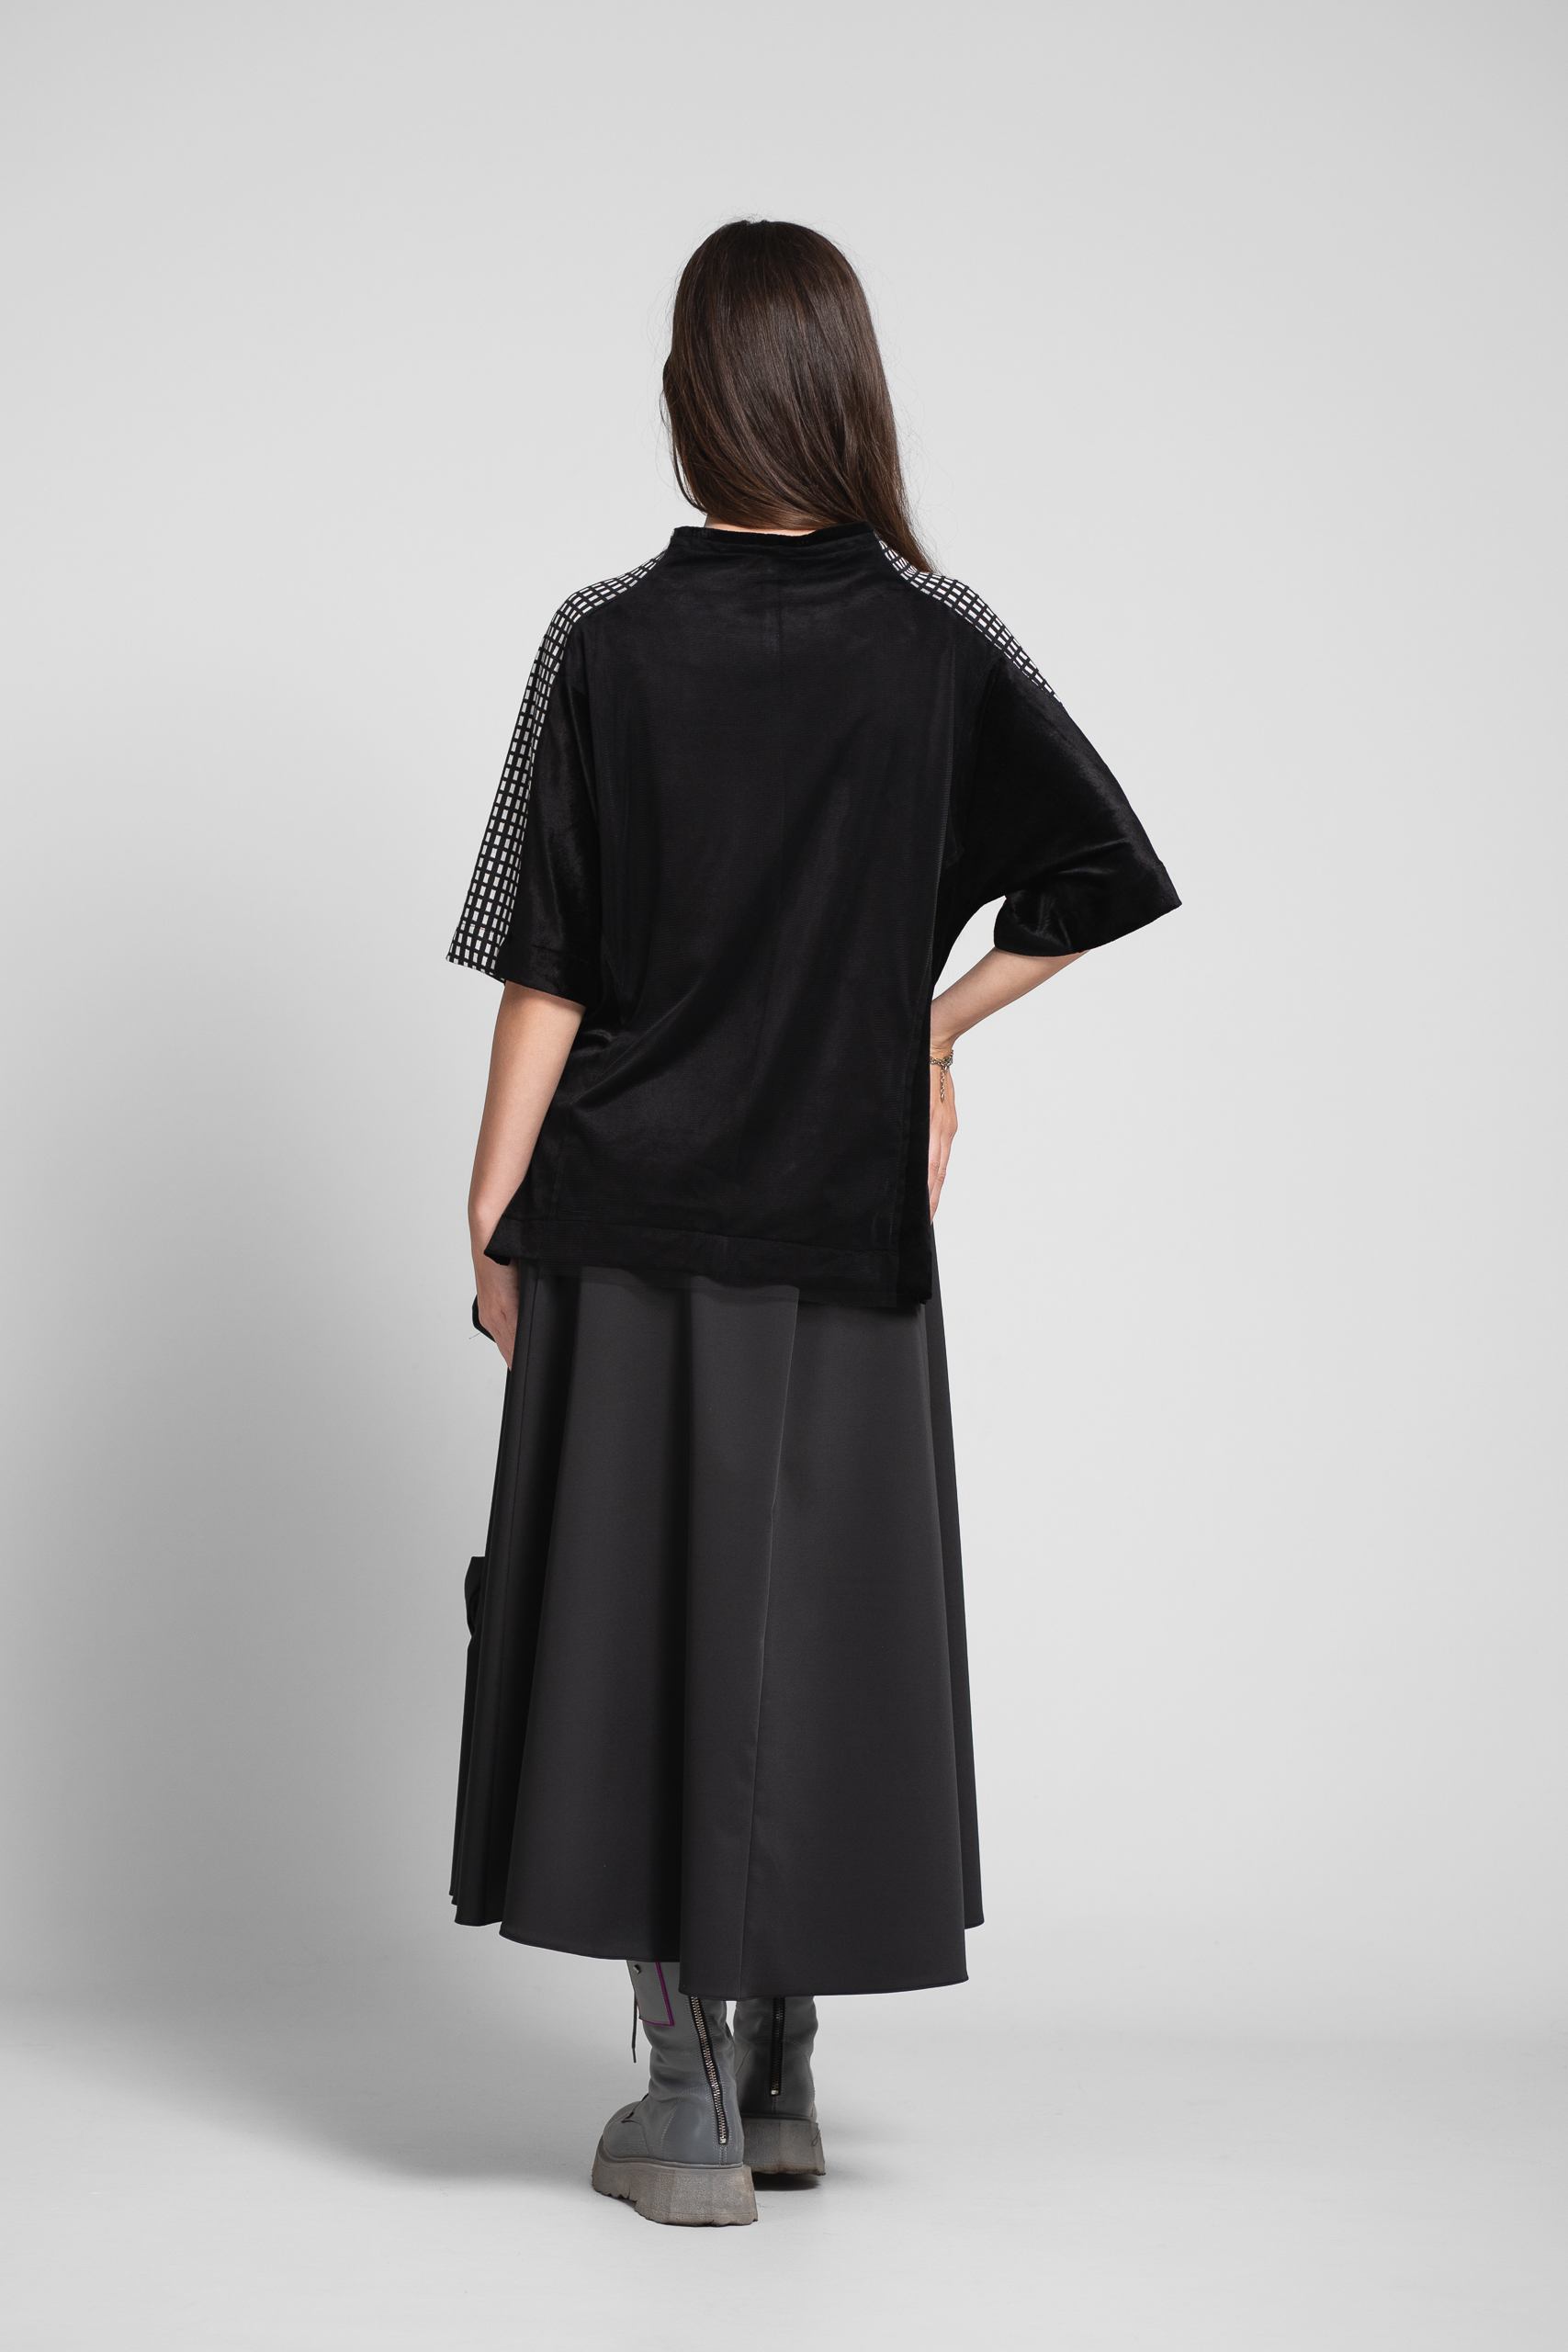 Bluza TIANA din catifea neagra. Materiale naturale, design unicat, cu broderie si aplicatii handmade